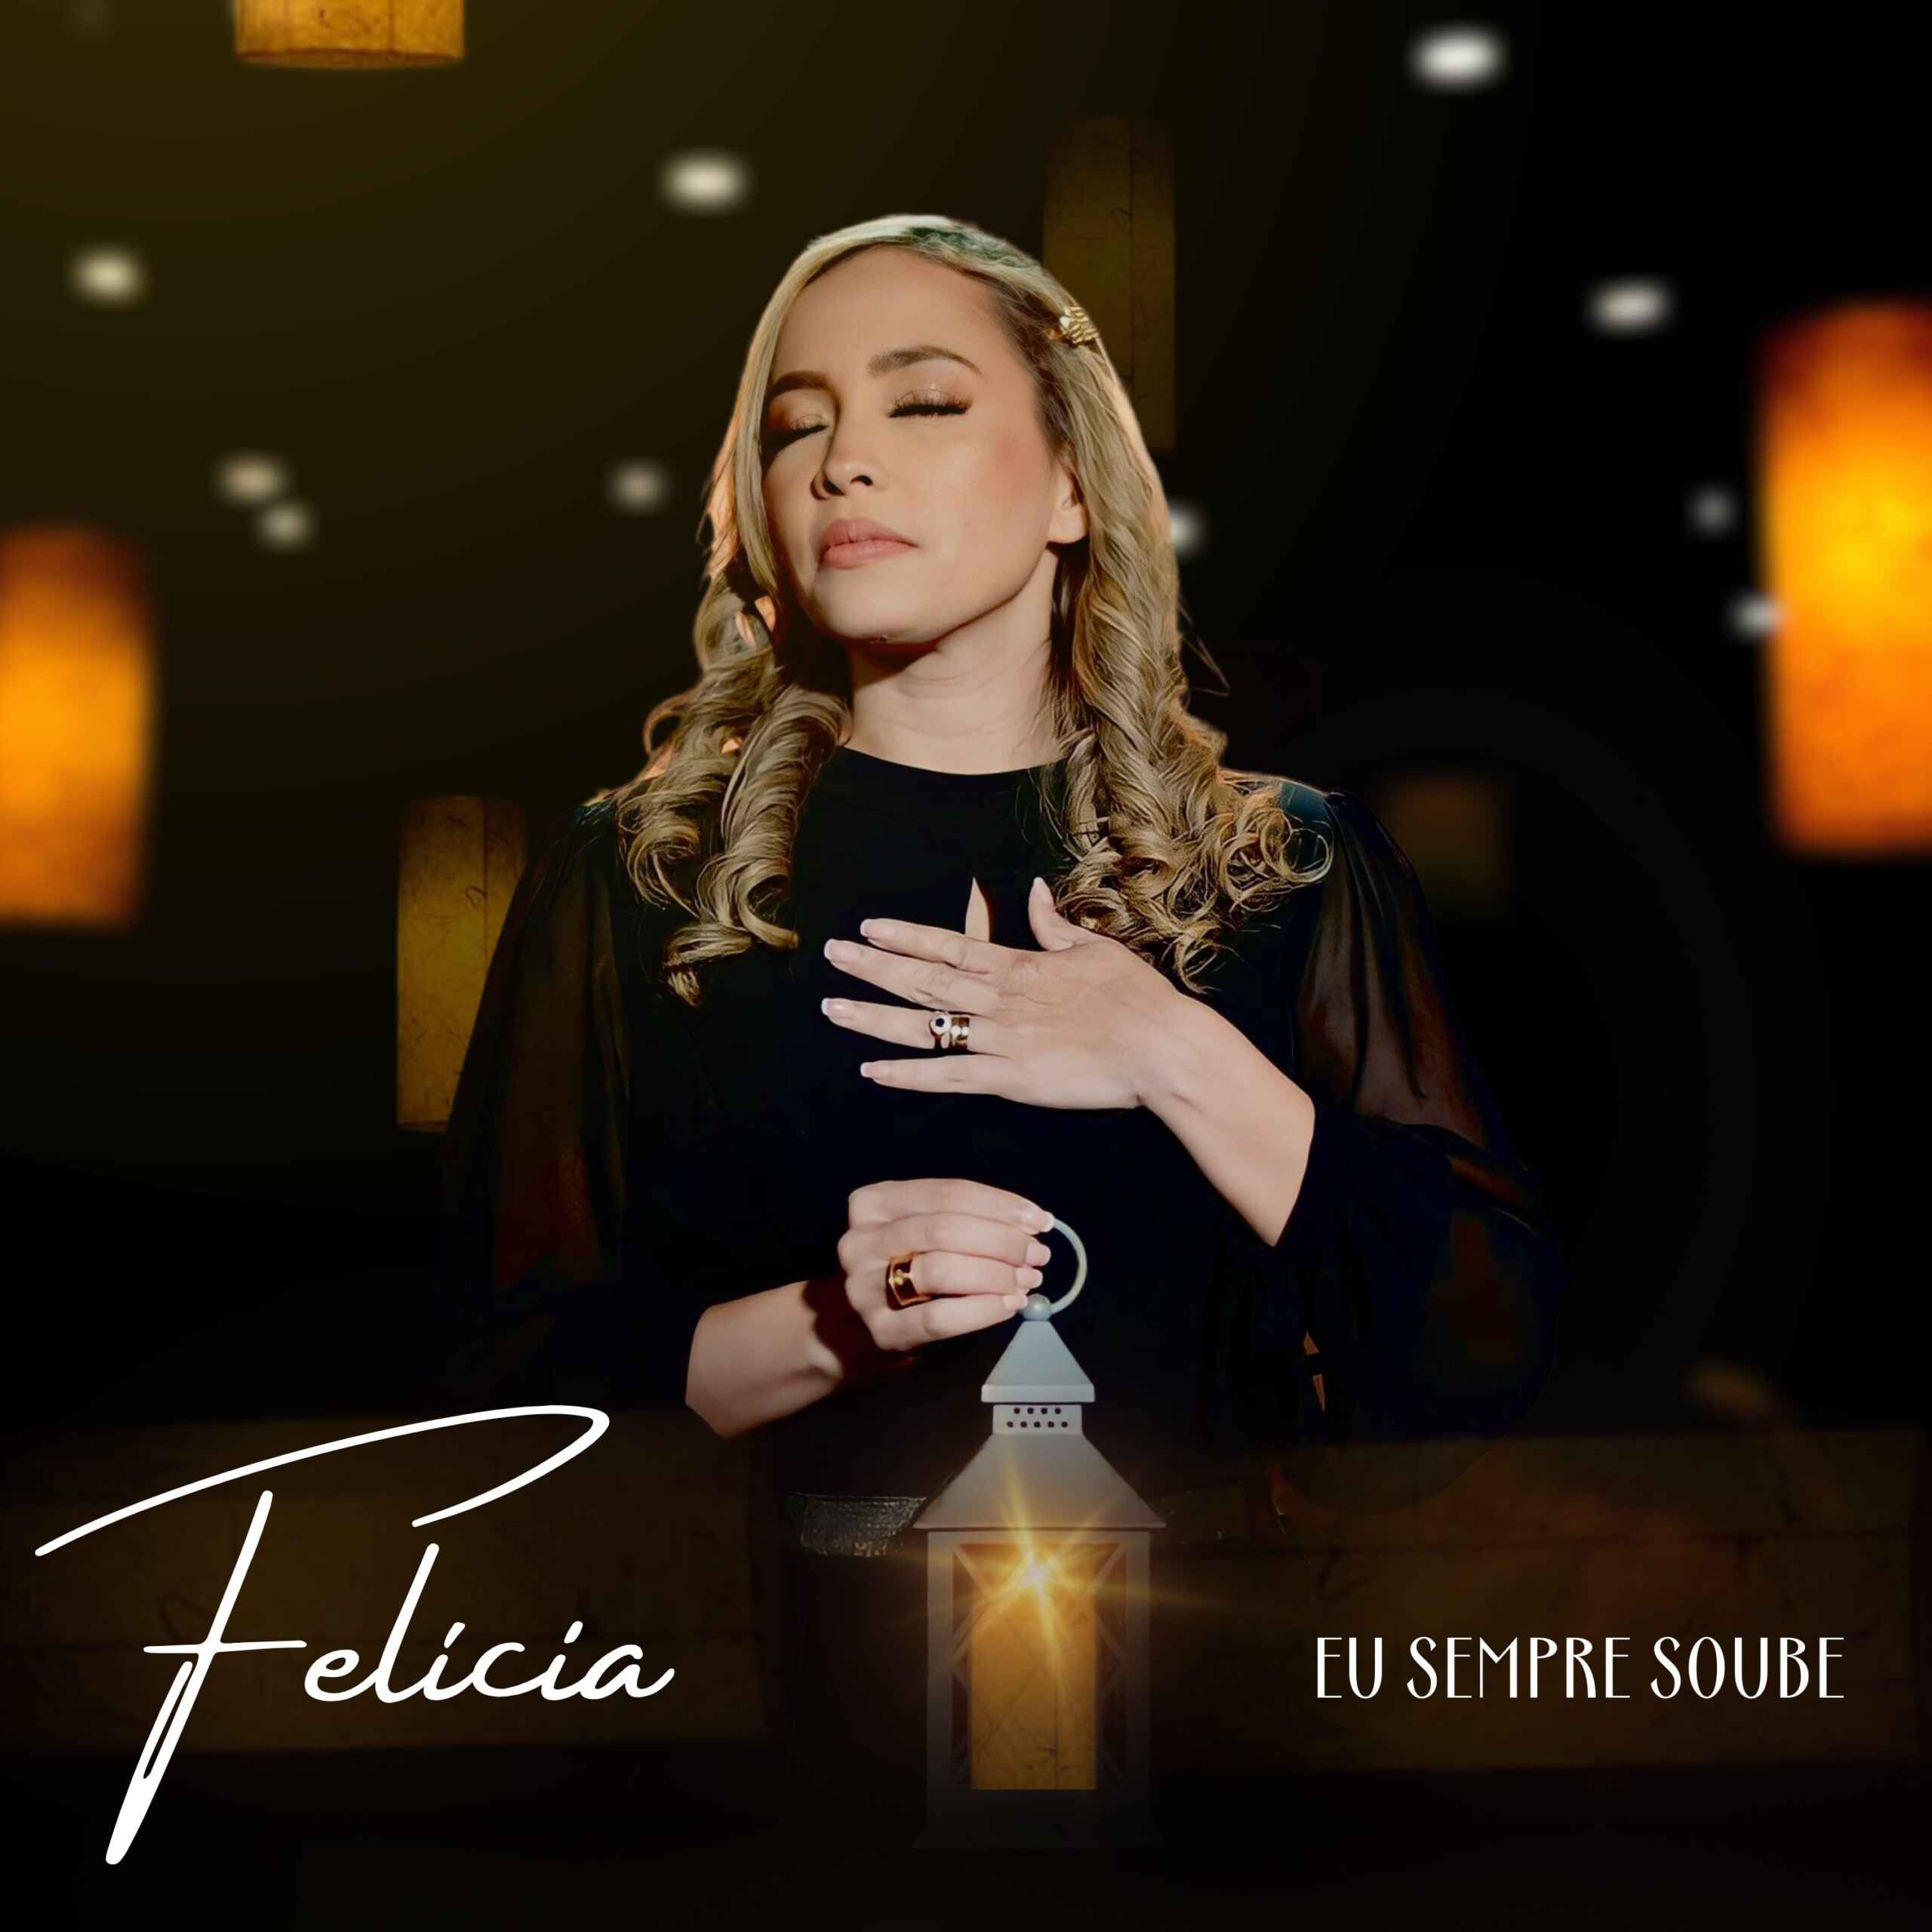 Lançamento do Primeiro Clipe da Cantora Gospel Felicia “Eu Sempre Soube”